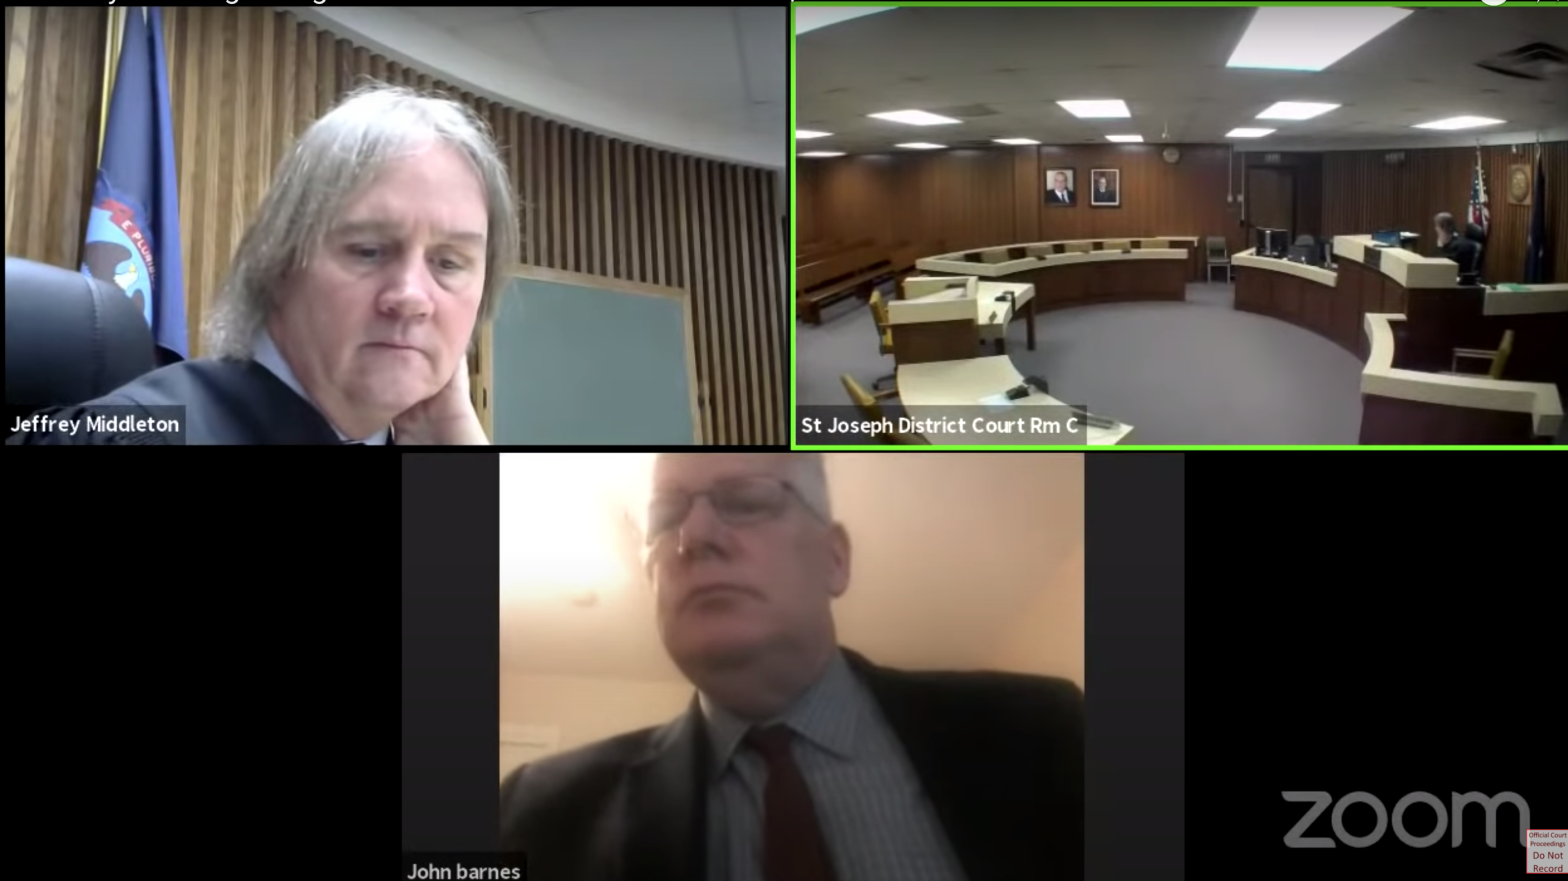 Screenshot: Judge Jeffrey Middleton, YouTube